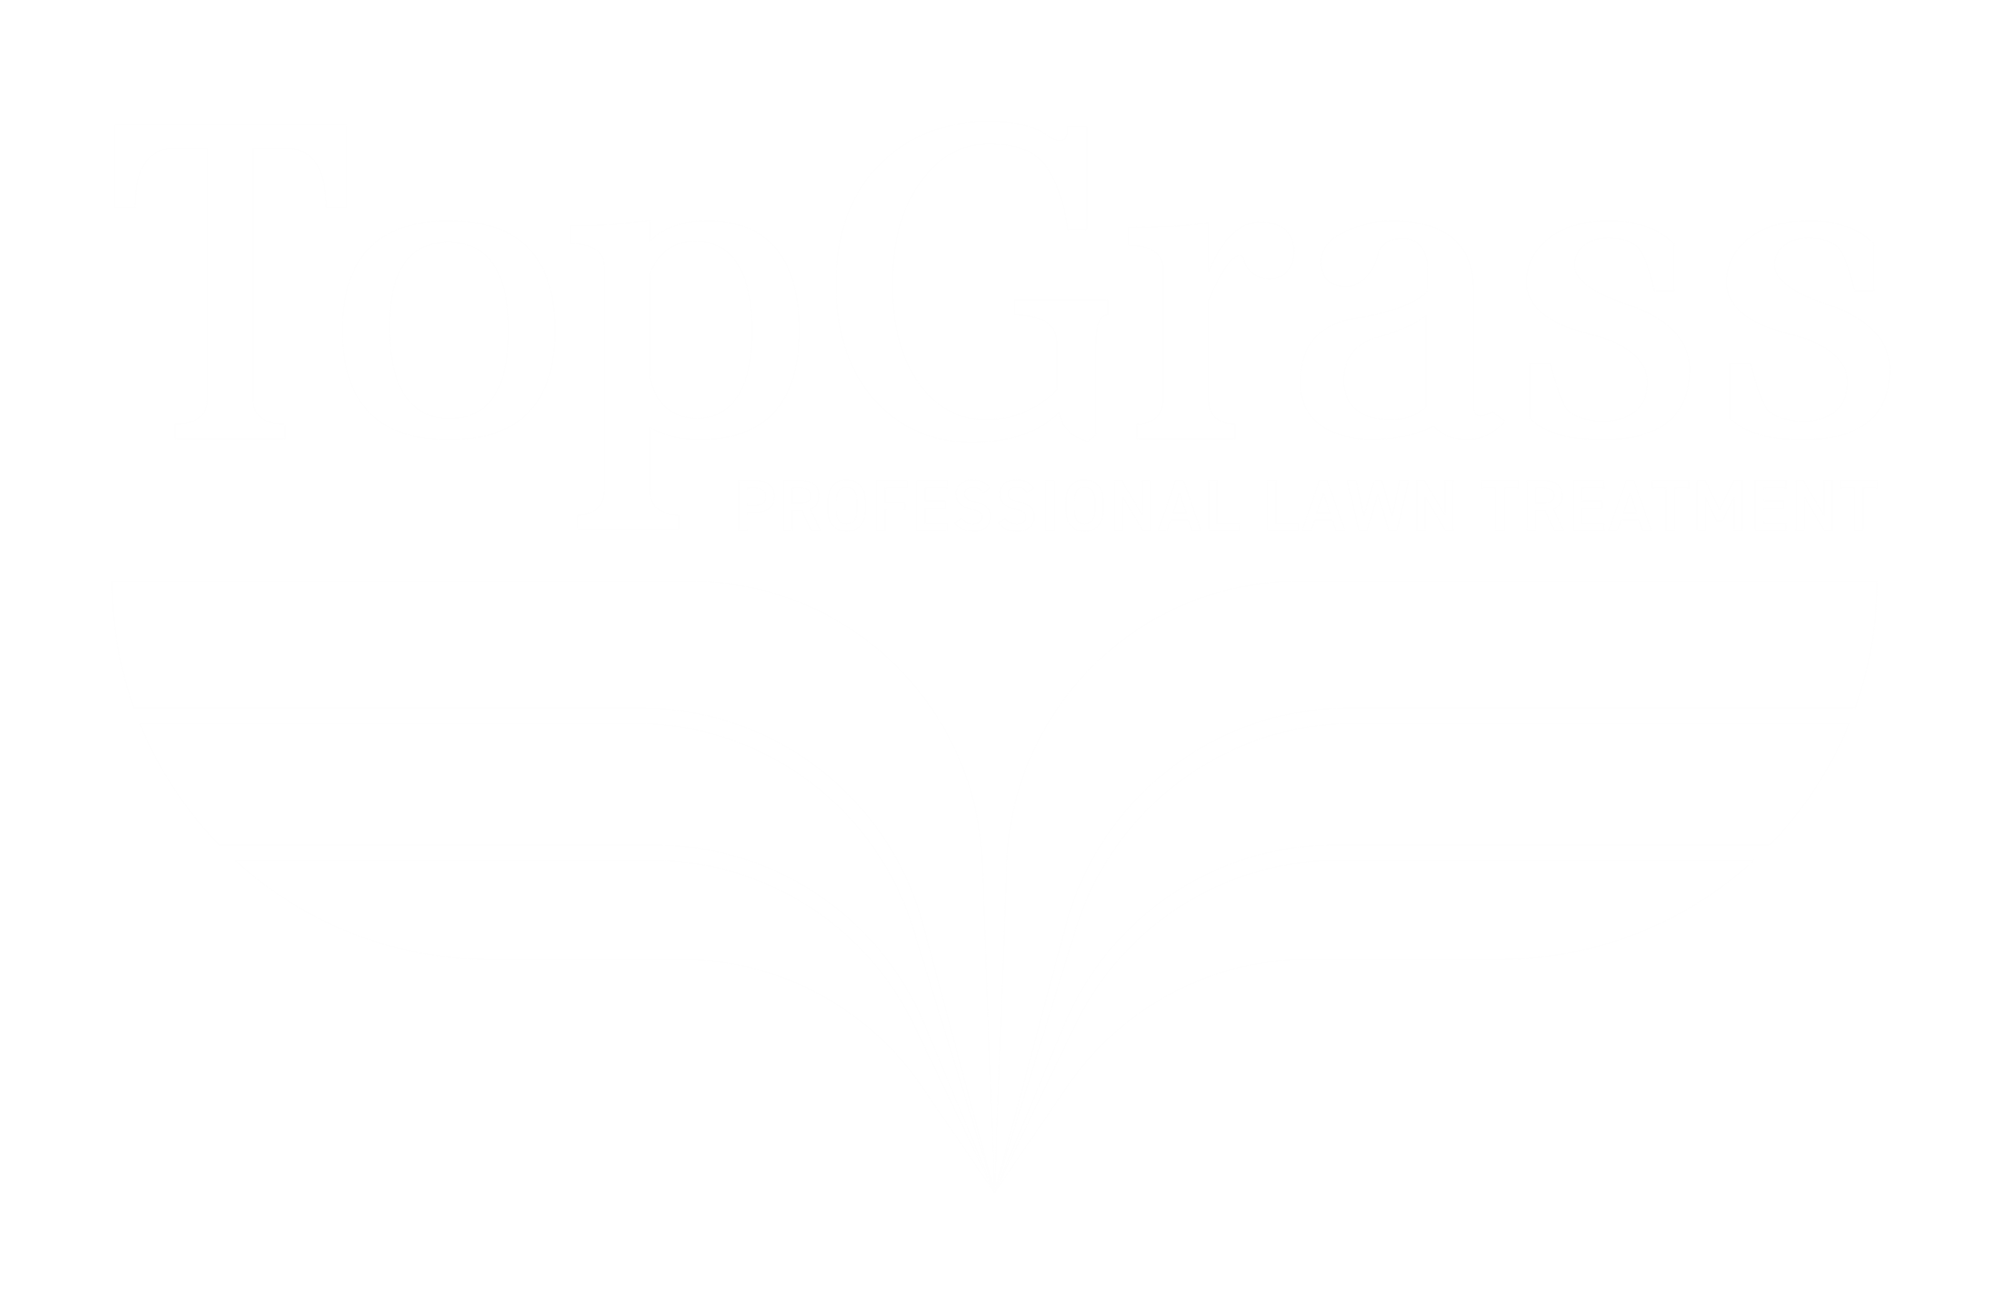 topgrass logo 2018 white 2000x1312